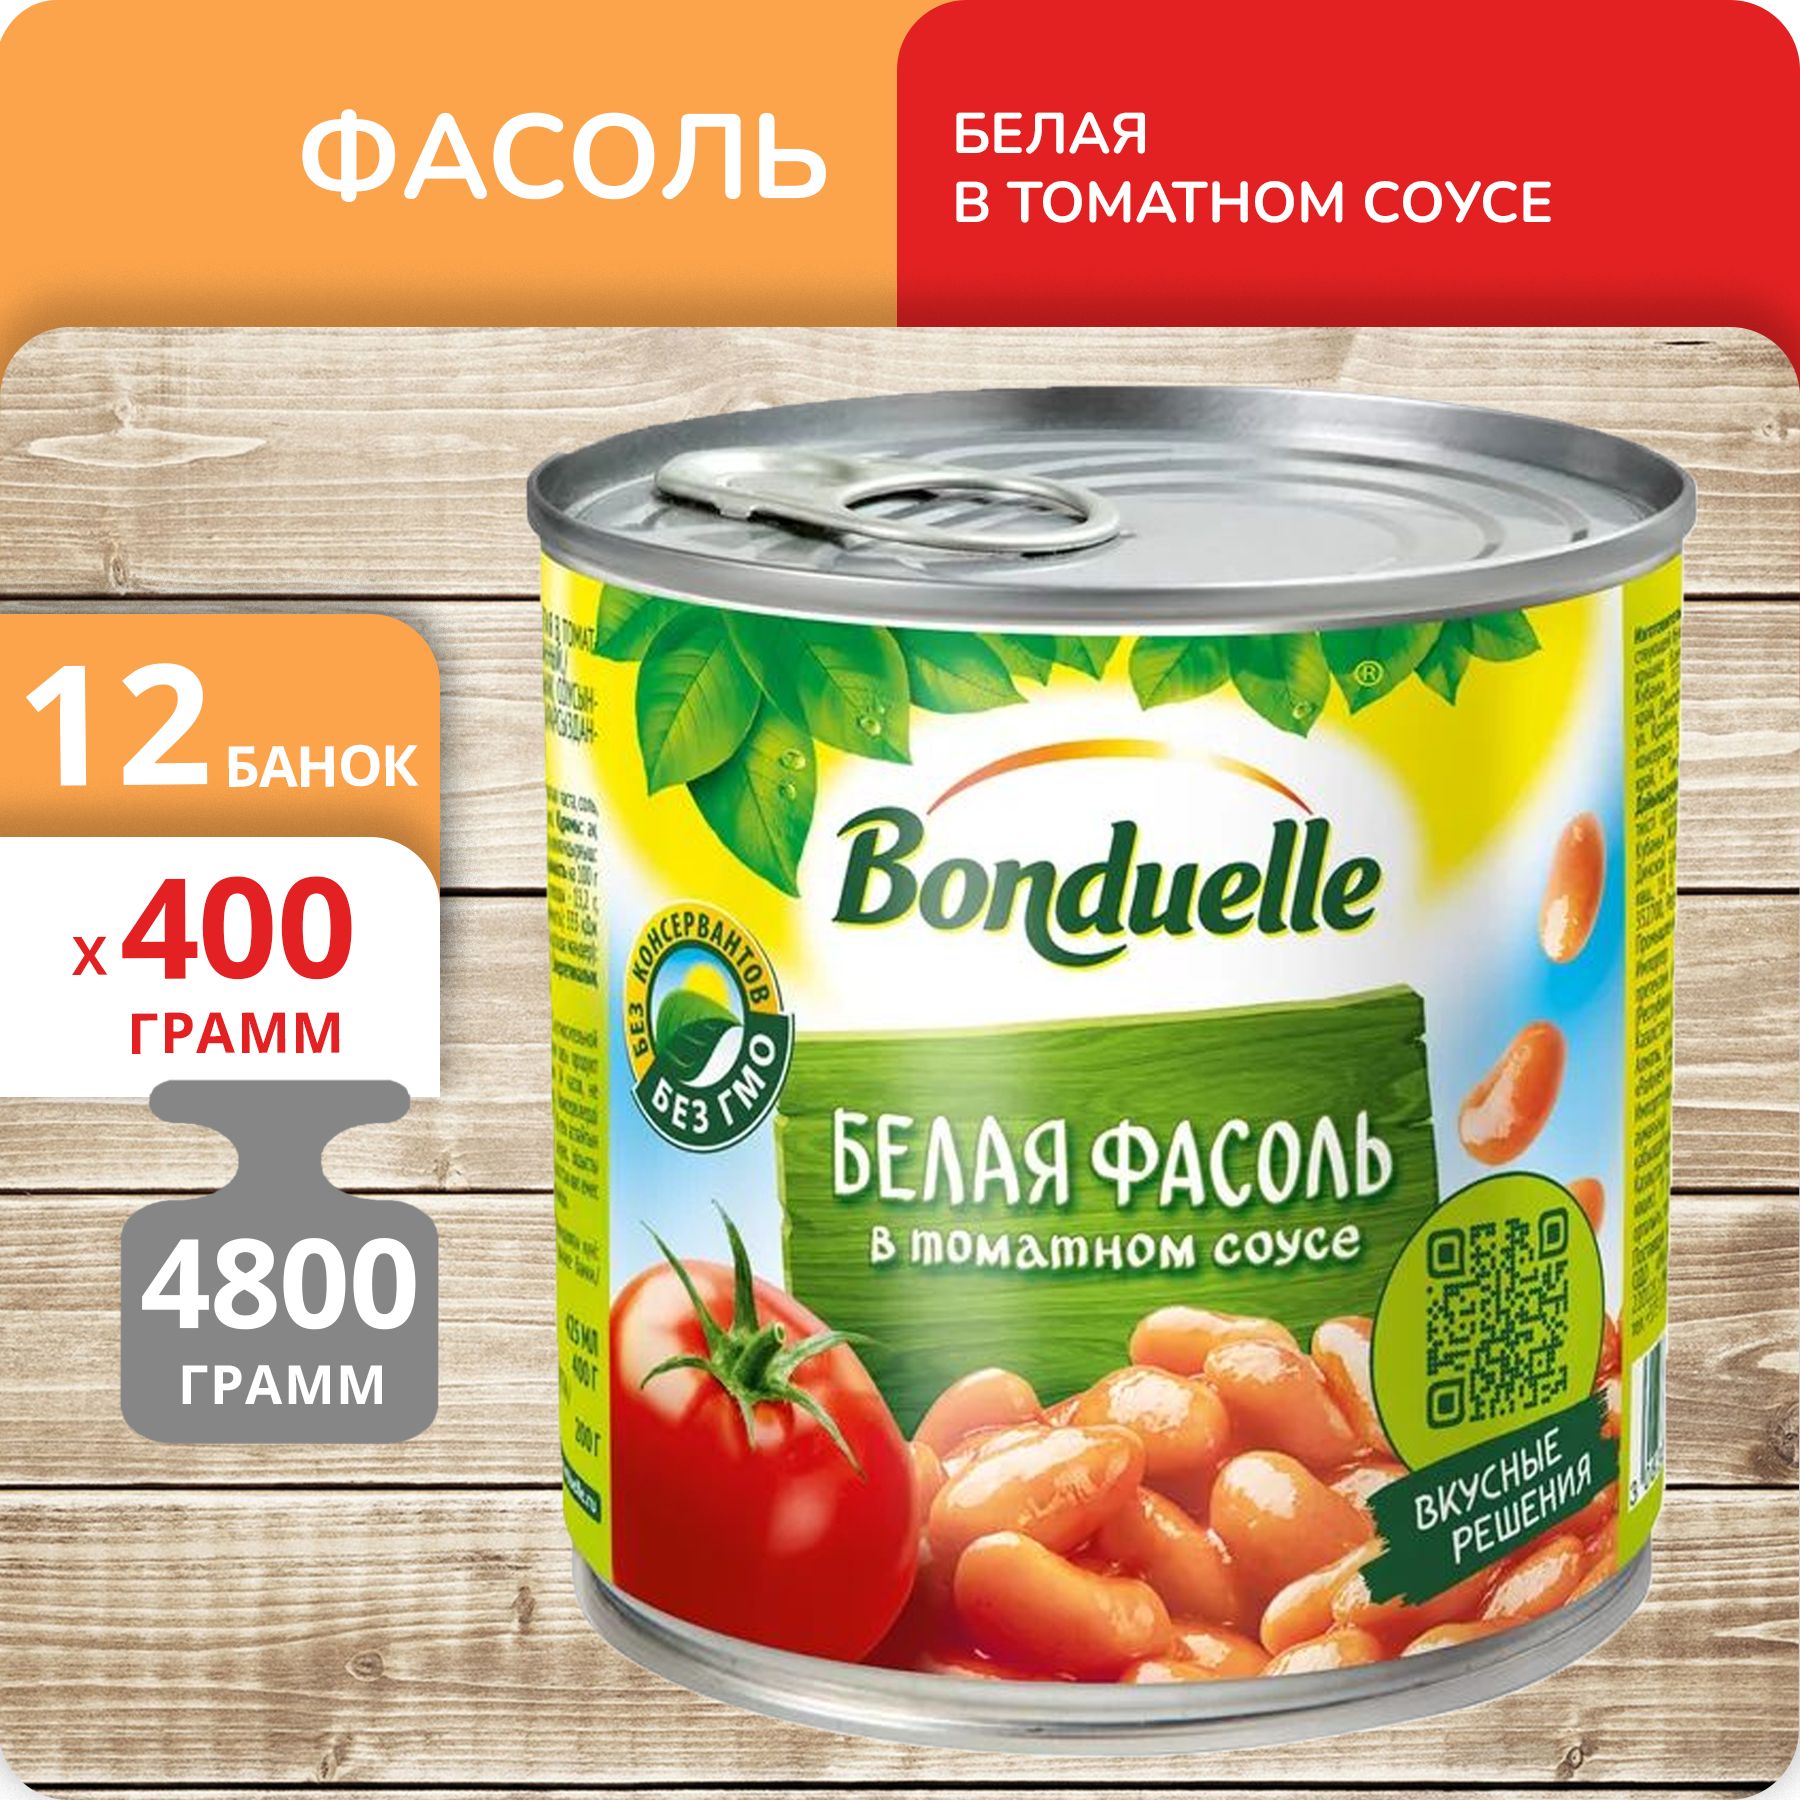 Фасоль белая Бондюэль в томатном соусе, 400 г х 12 шт